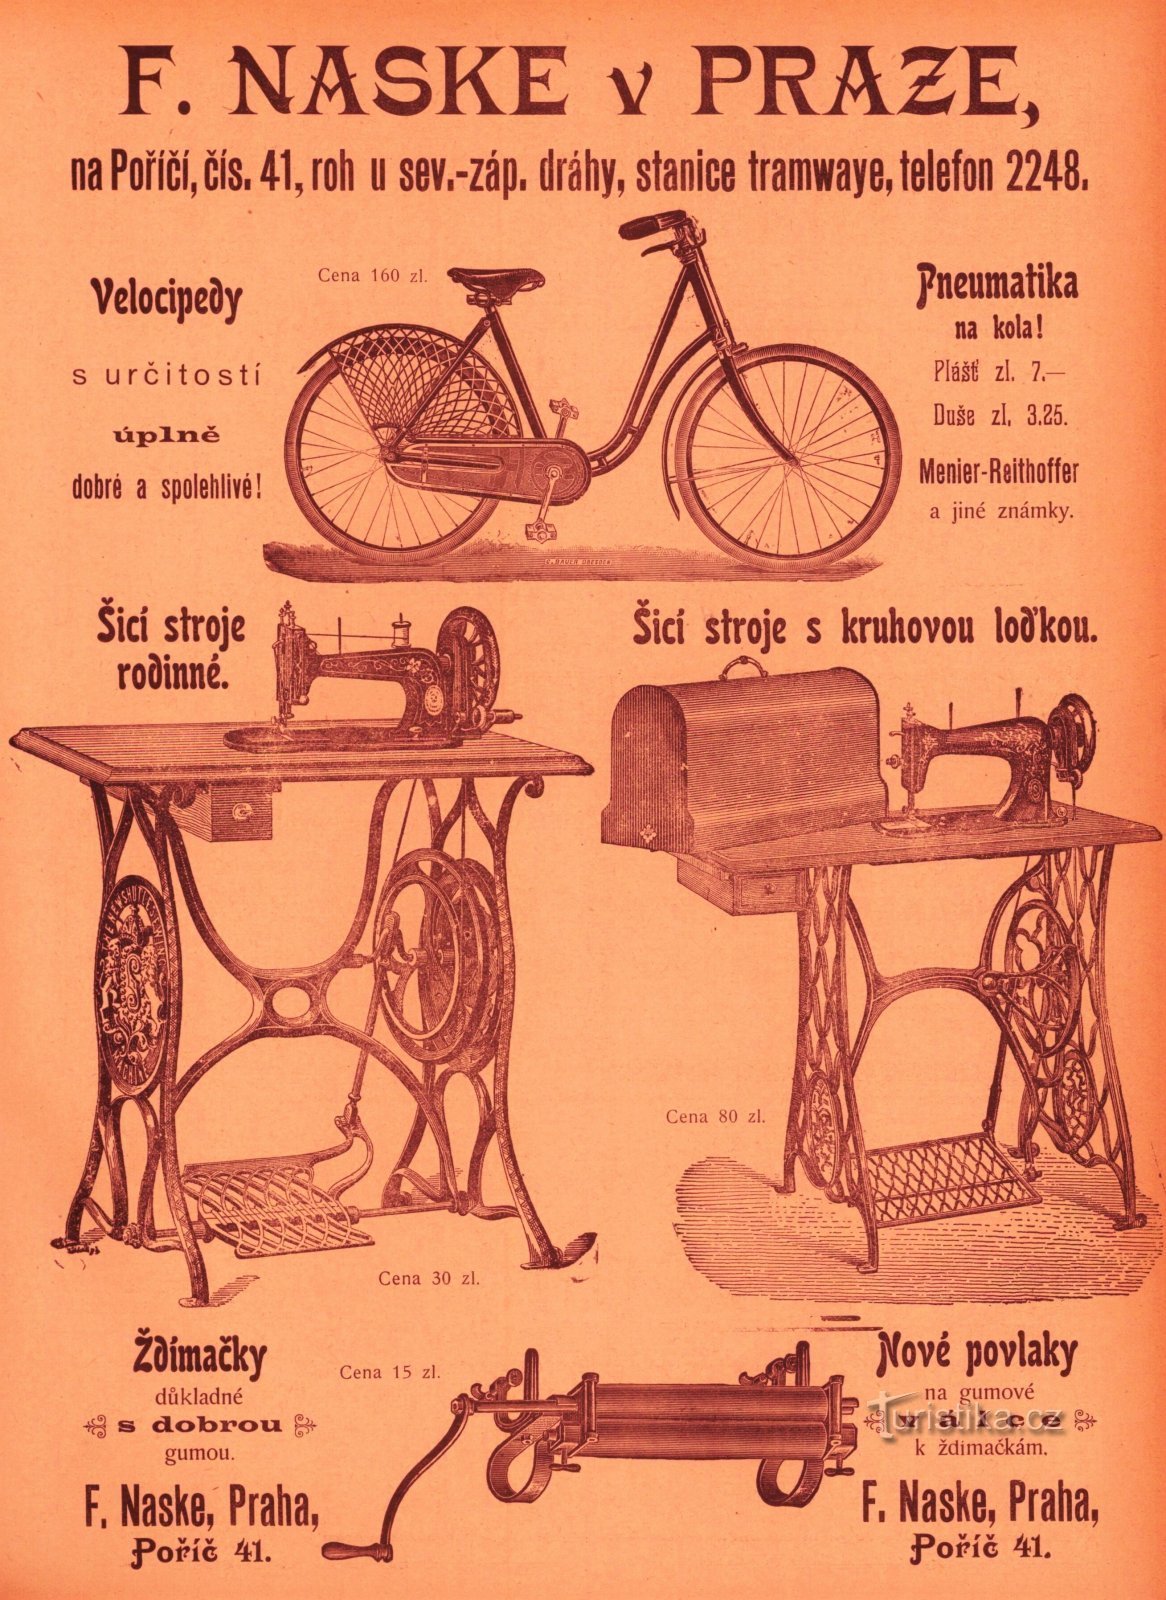 Διαφήμιση για το κατάστημα του František Naske από το 1899